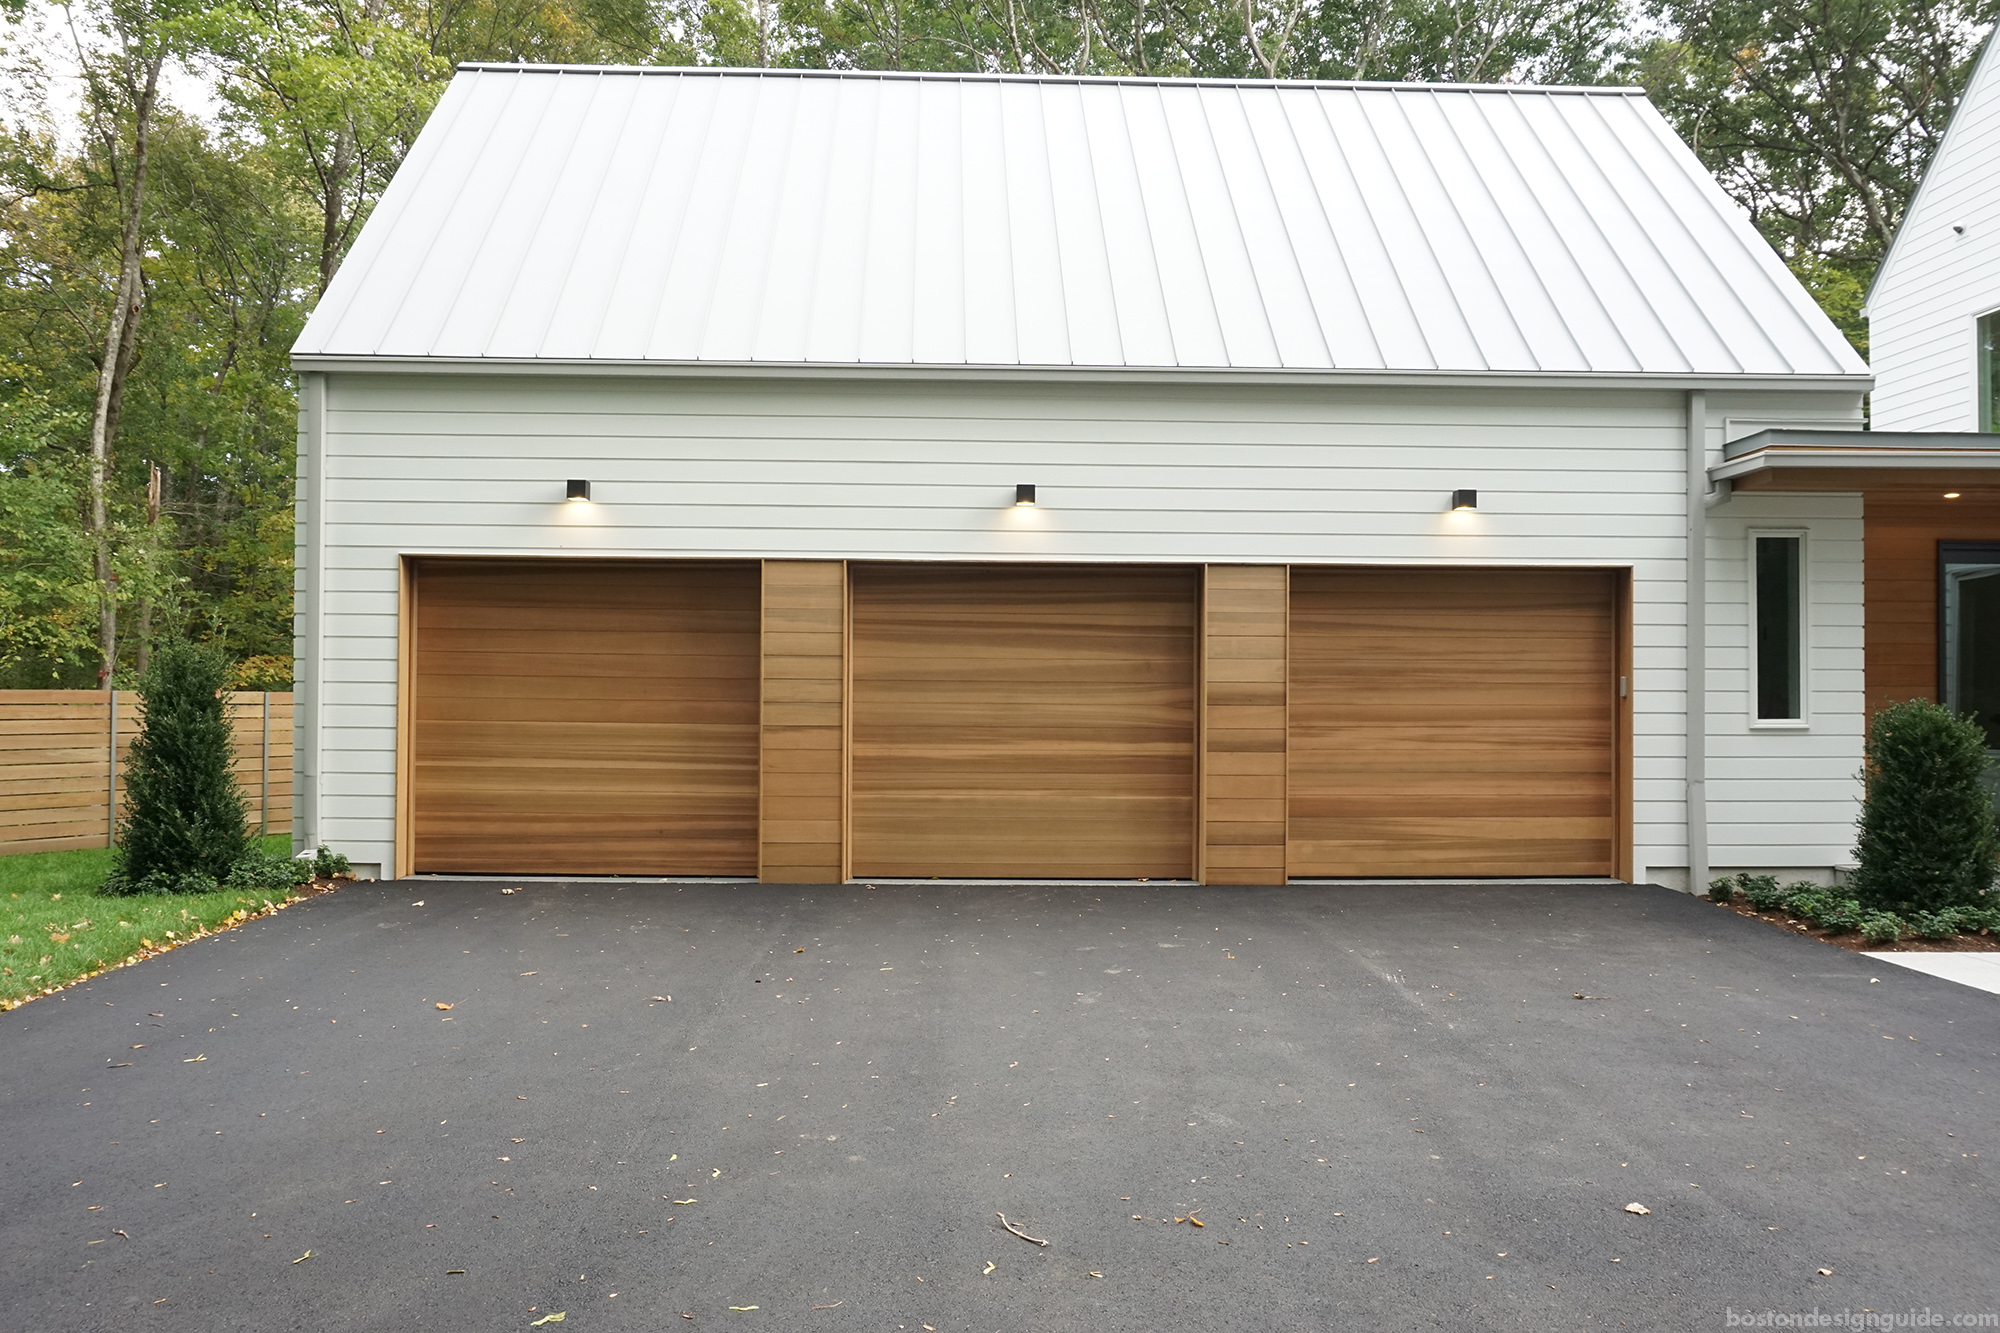 Designer Garage Doors